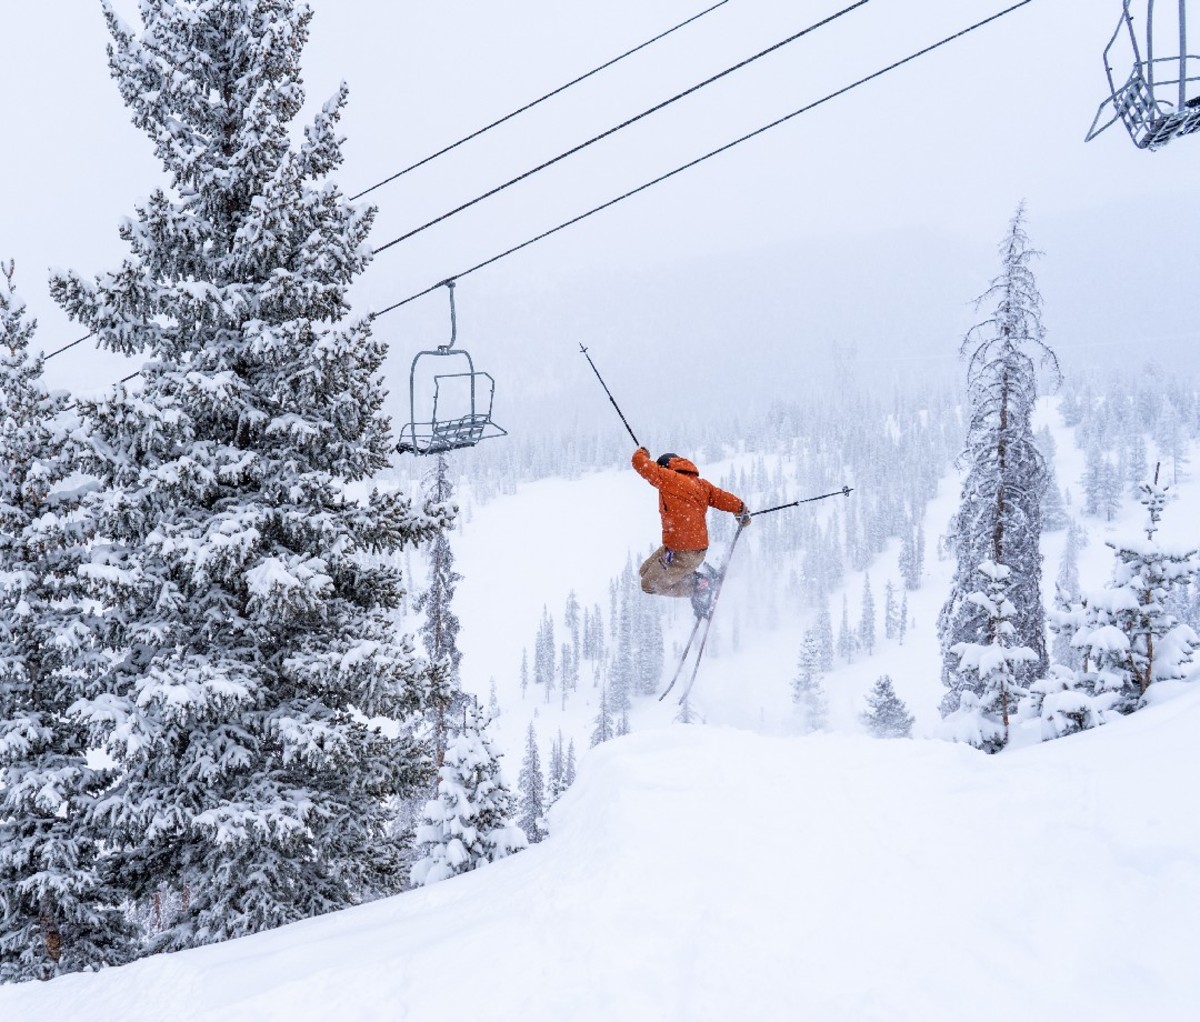 Skier taking a jump near a chair lift at Monarch Mountain